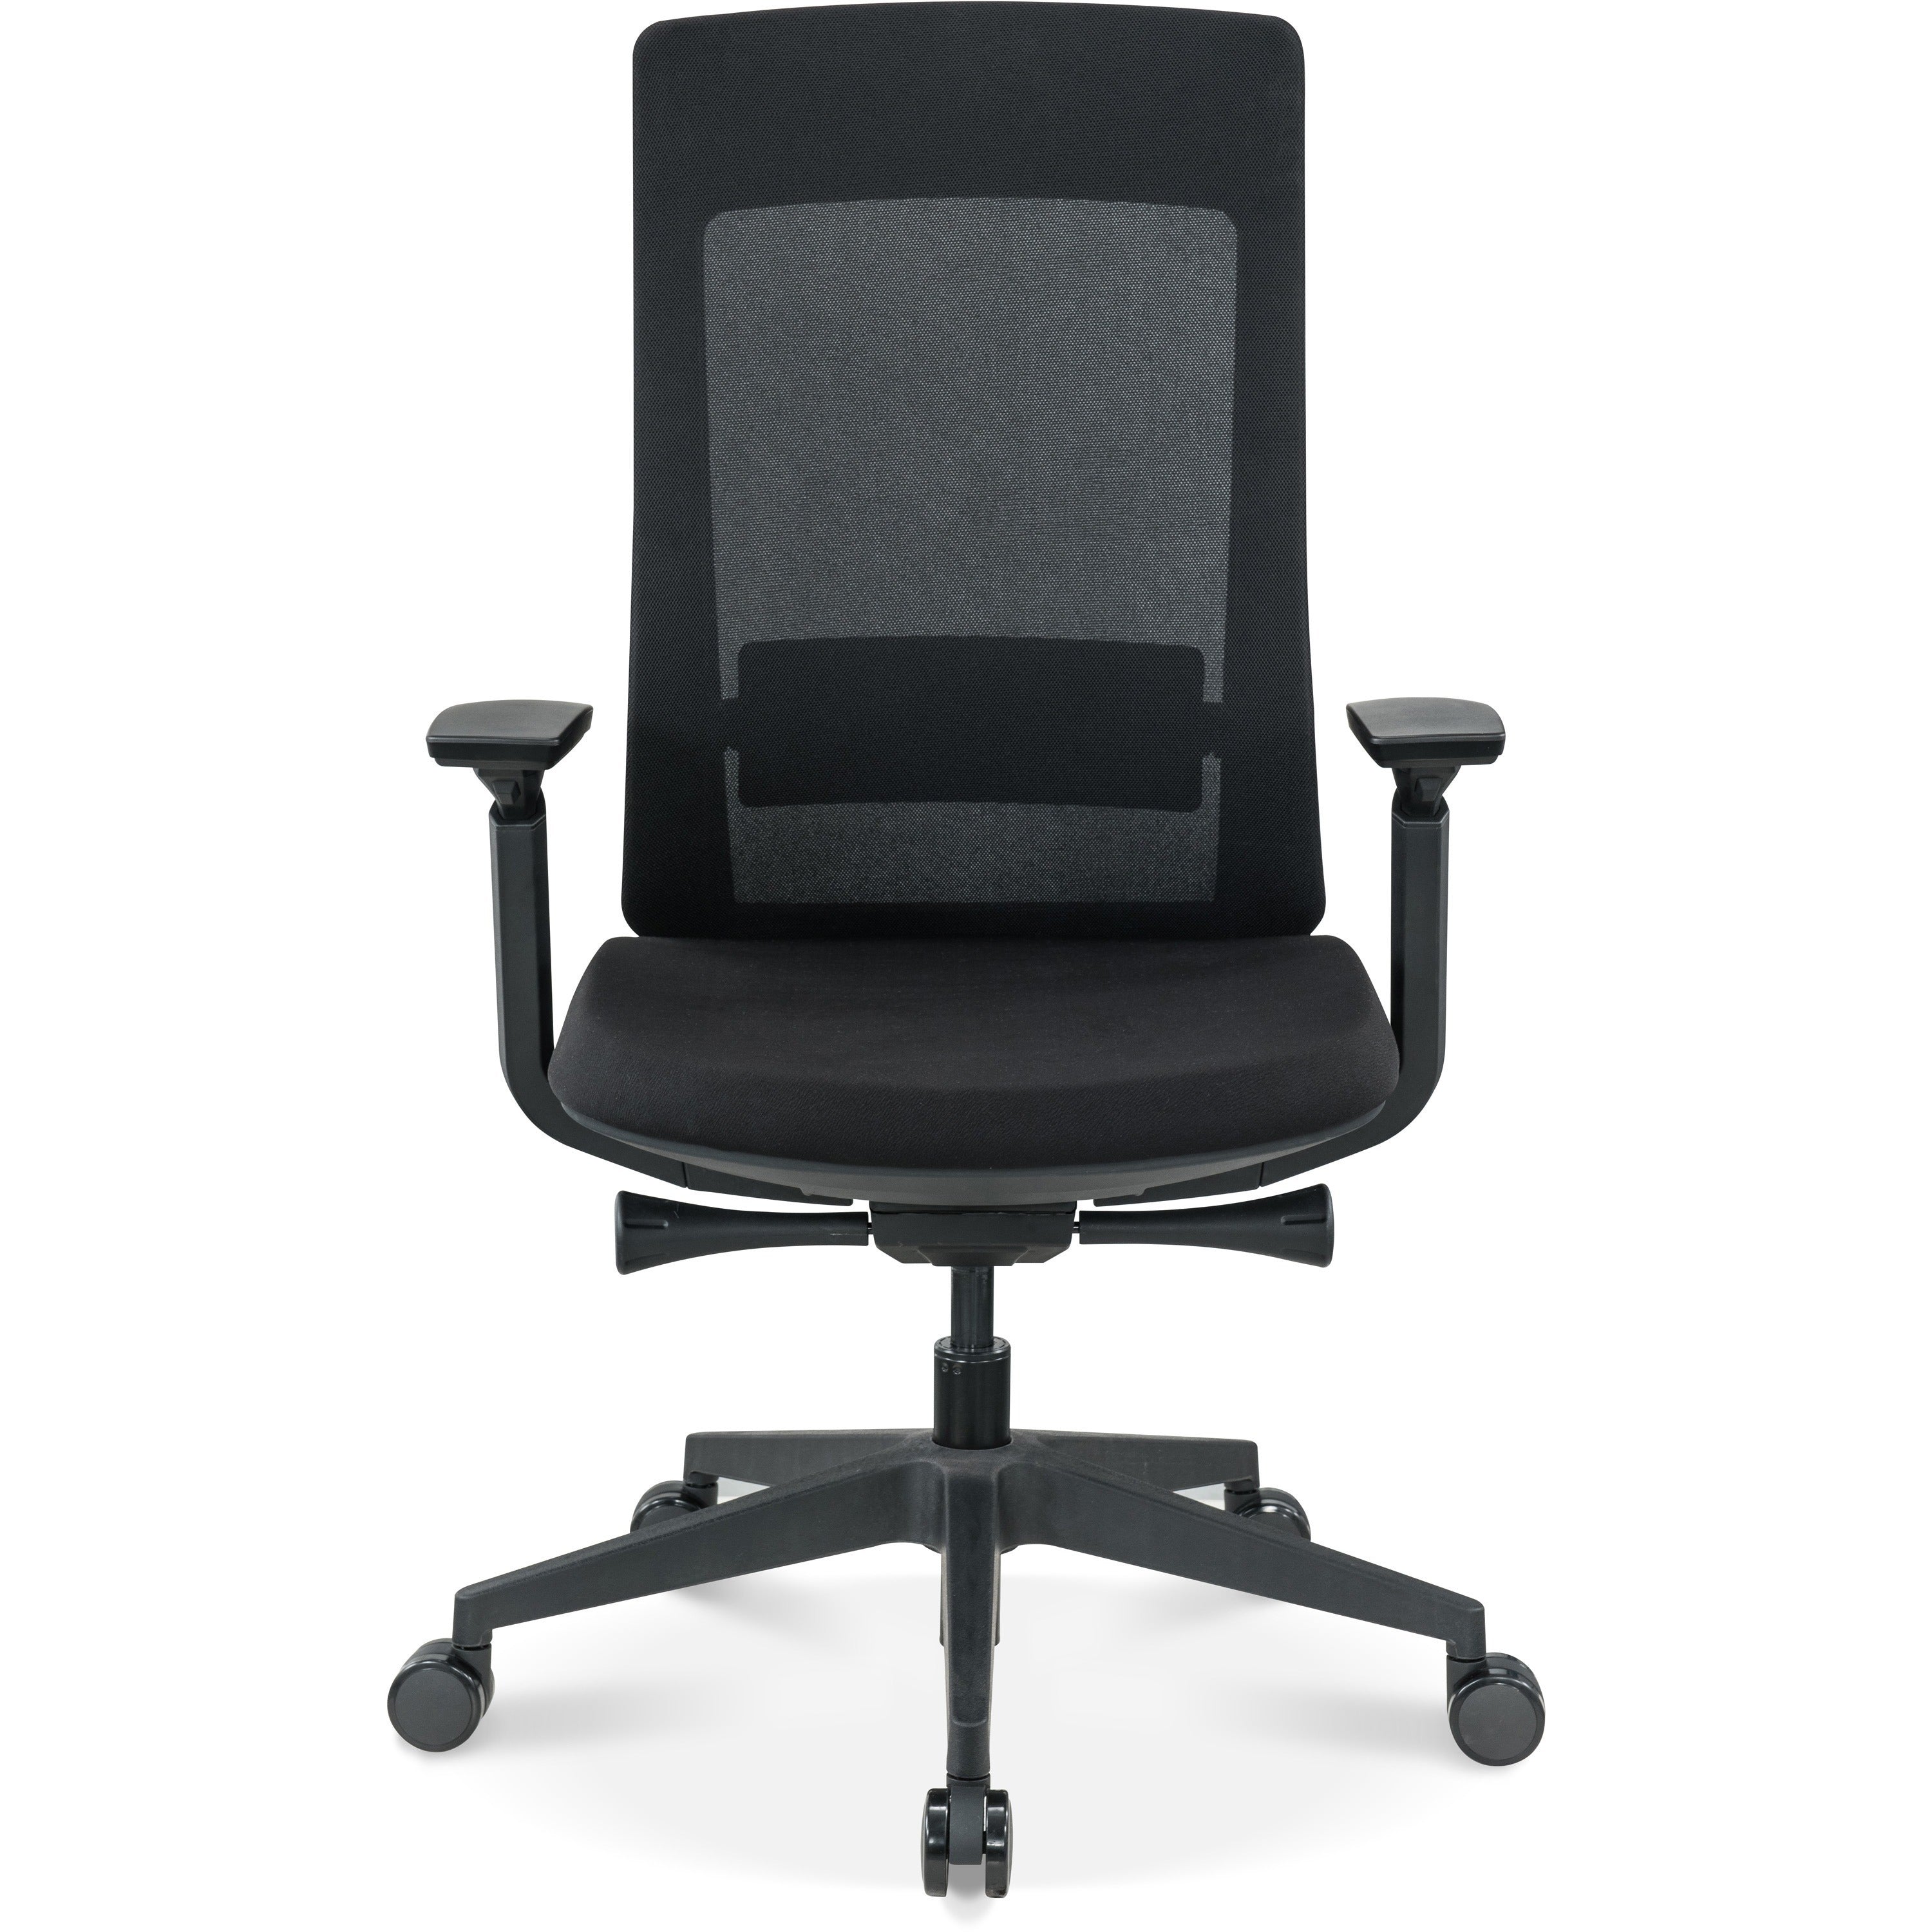 eurotech-elevate-chair-black-fabric-seat-black-mesh-back-black-frame-5-star-base-armrest-1-each_eutelv2blkfsblk - 2